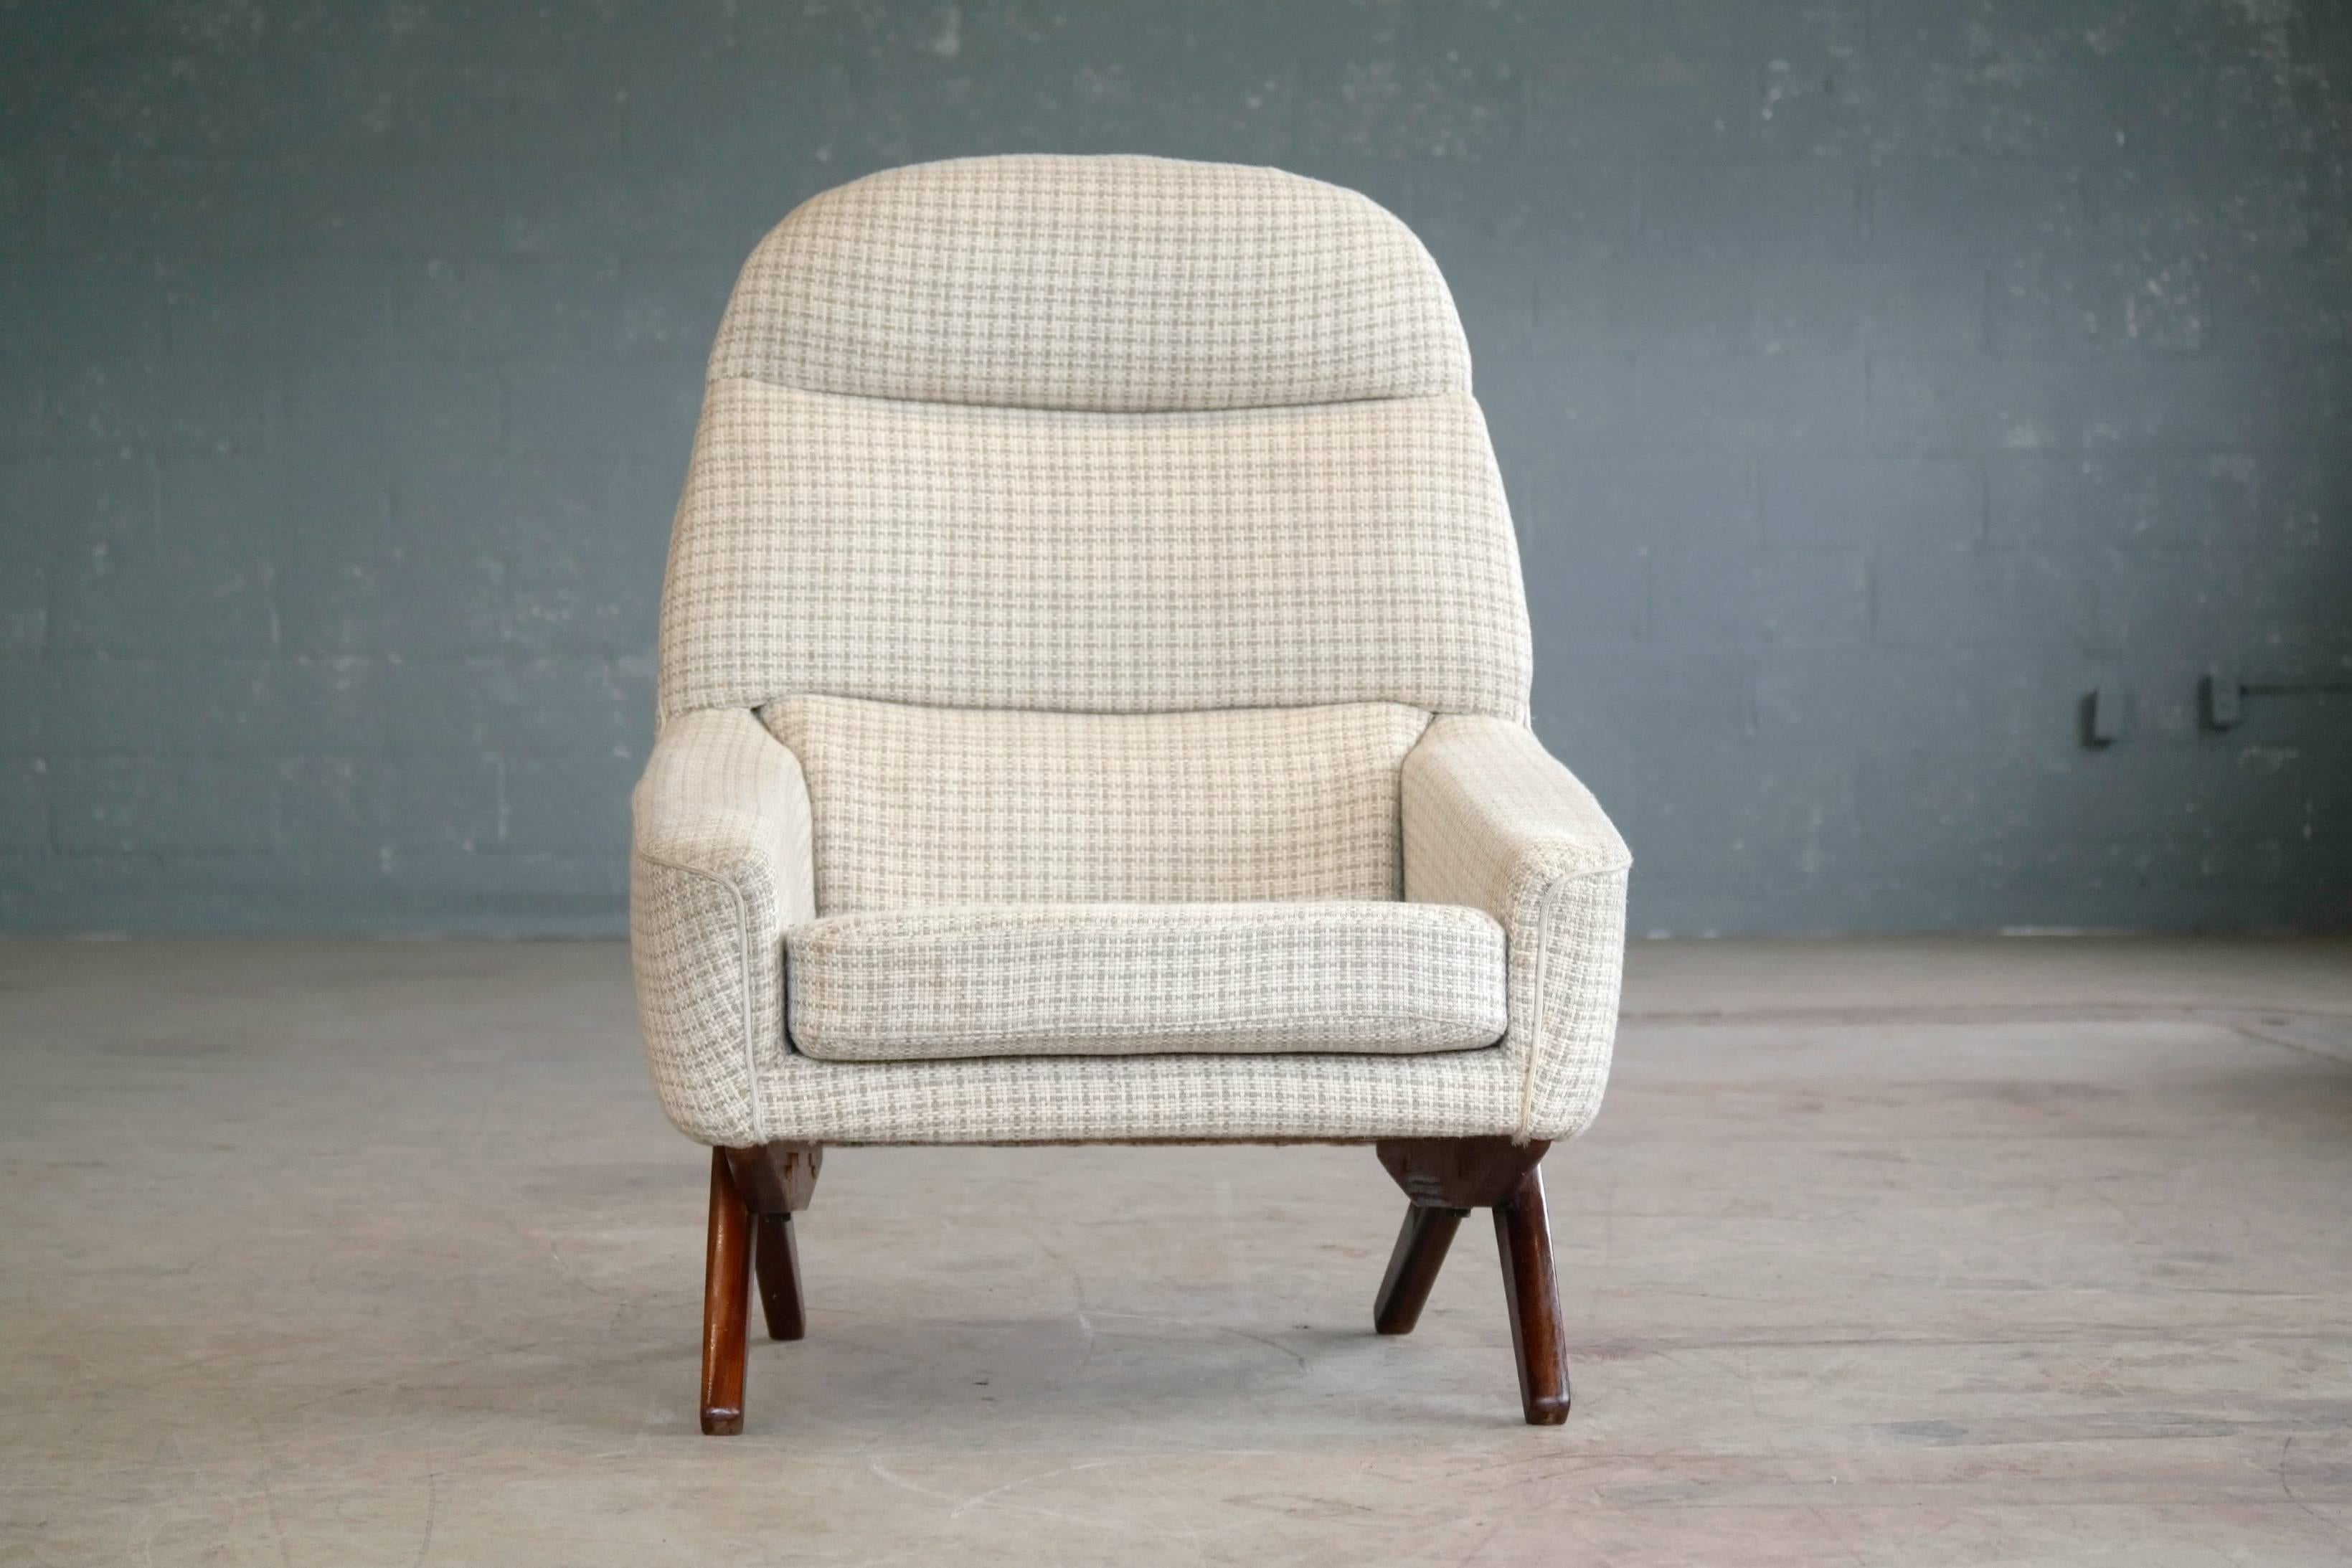 Der ultimative coole Lounge-Sessel aus den 1960er Jahren von Leif Hansen. Leif Hansen ist sehr begehrt und daher teuer. Er wird oft als einer der großen dänischen Designer übersehen, da seine Werke nicht in großer Zahl hergestellt wurden und auf dem